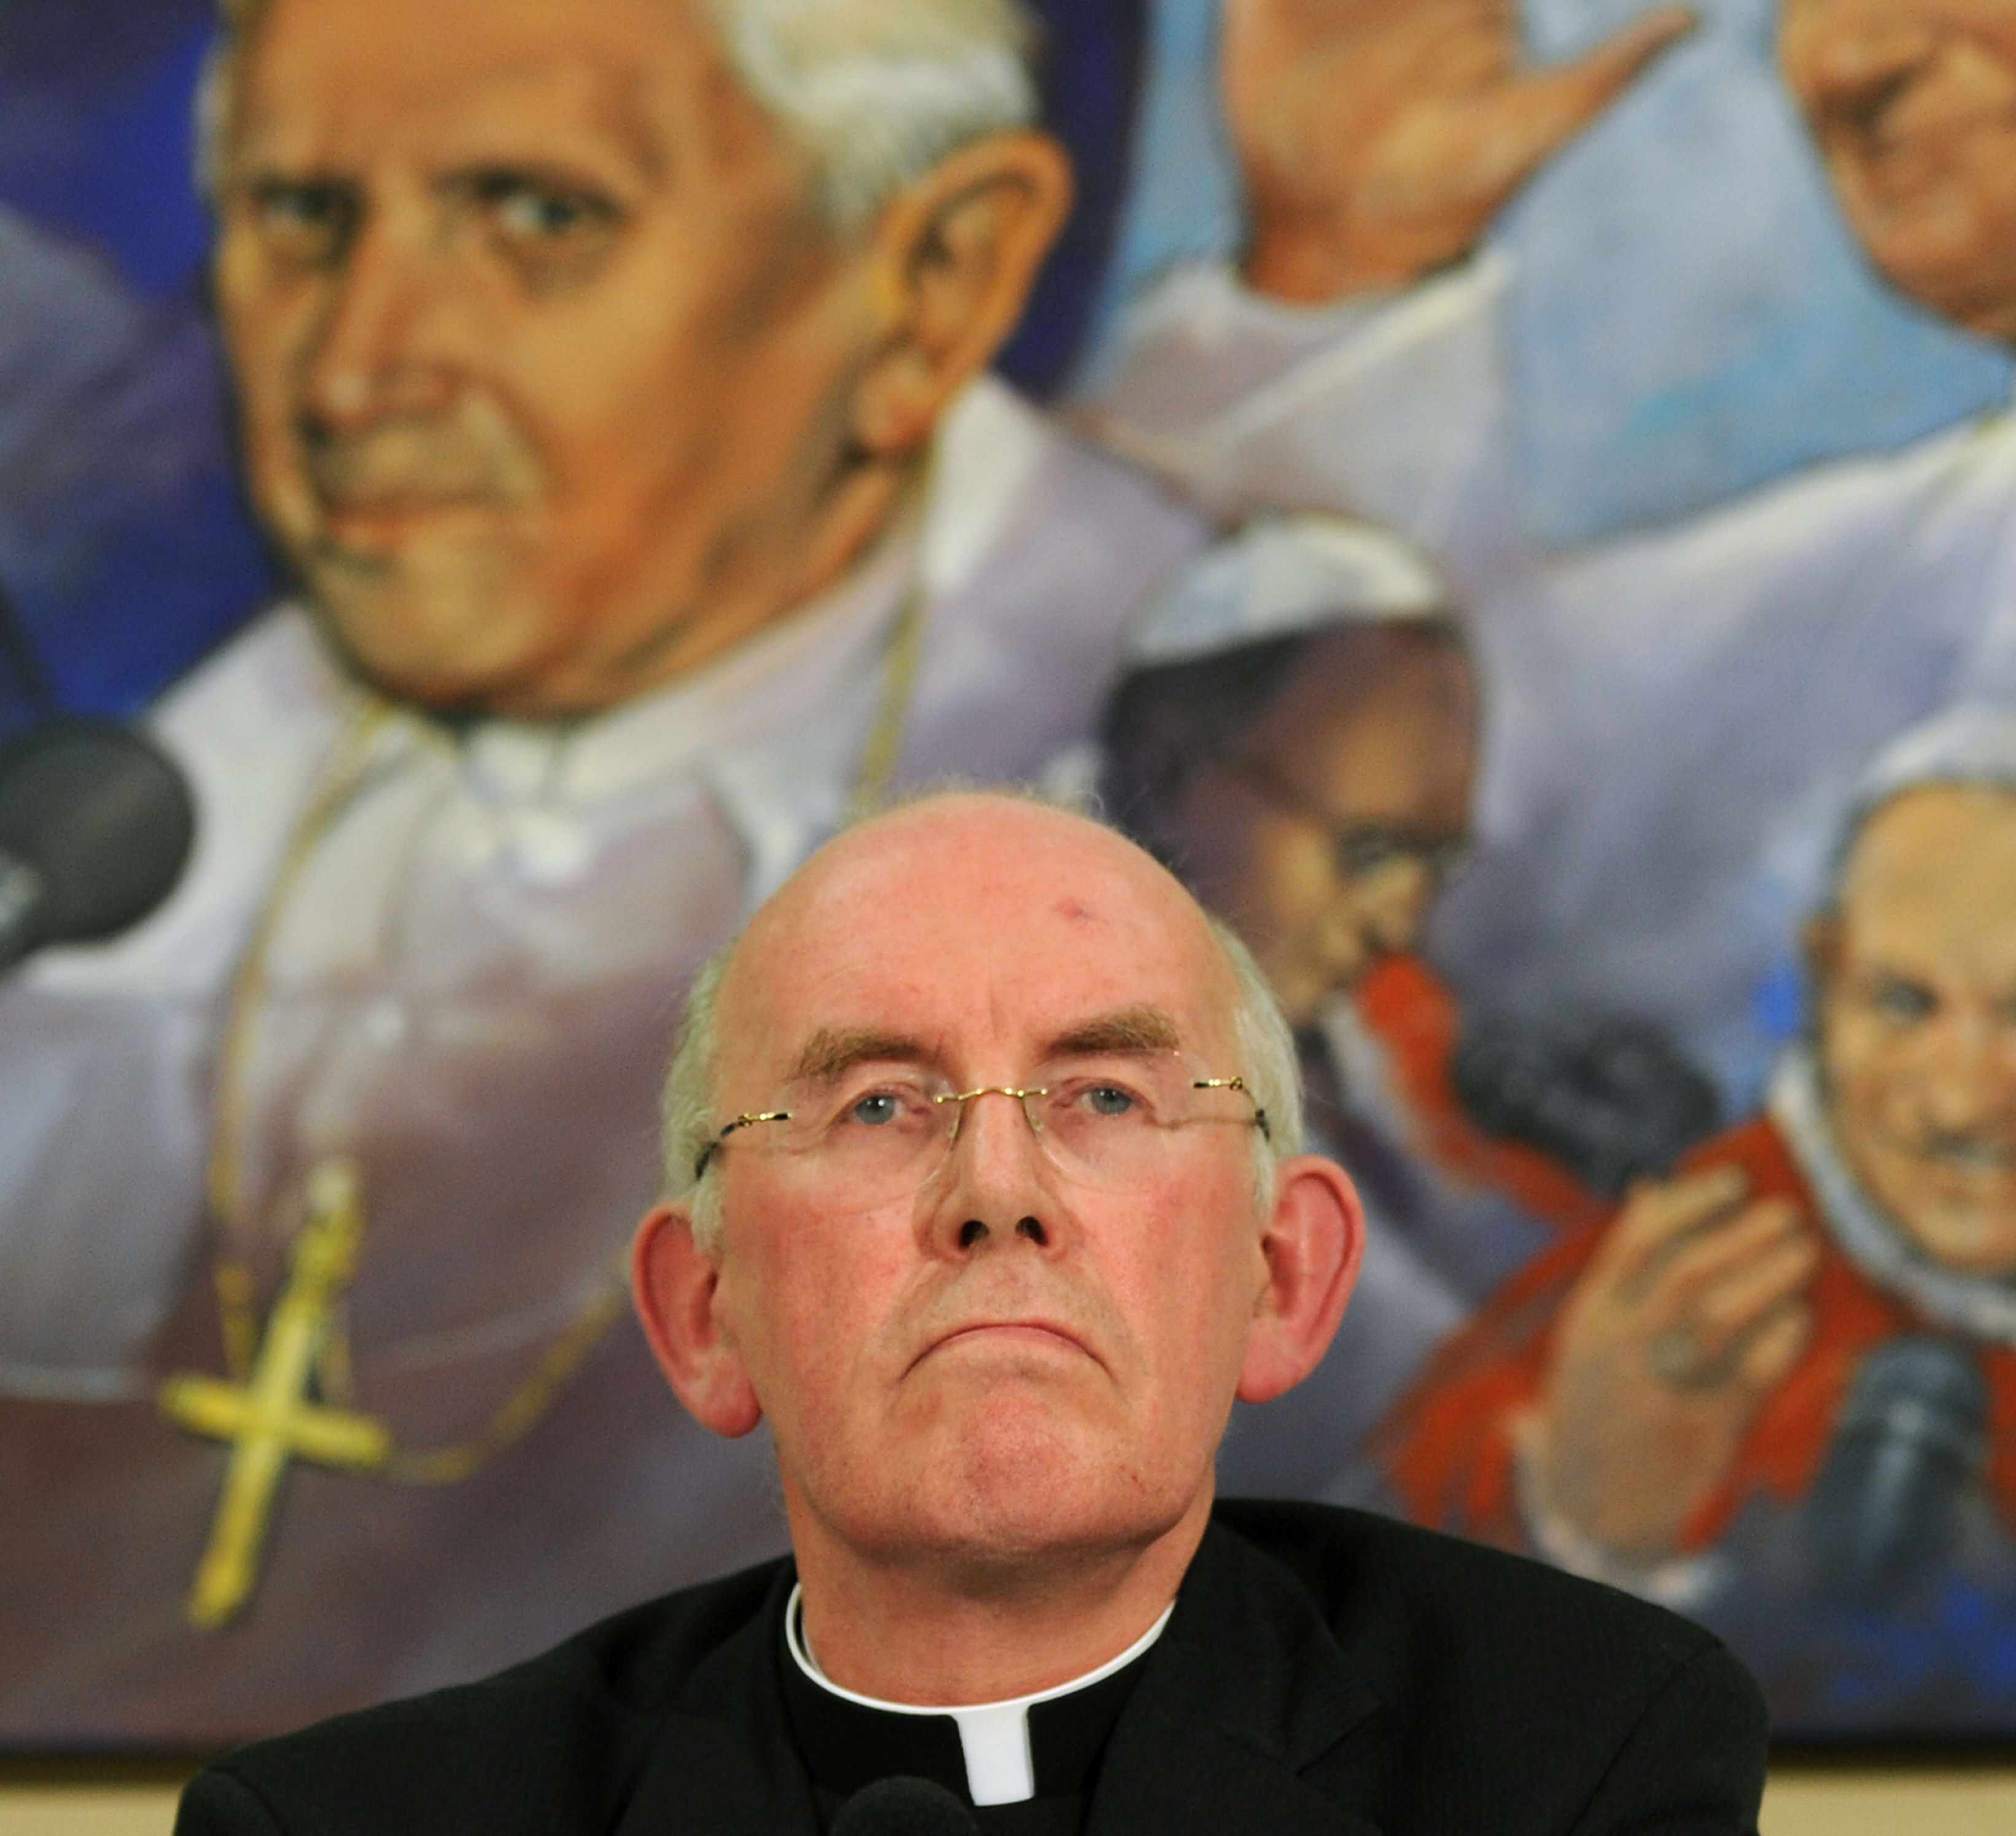 Catholic Primate Cardinal Sean Brady